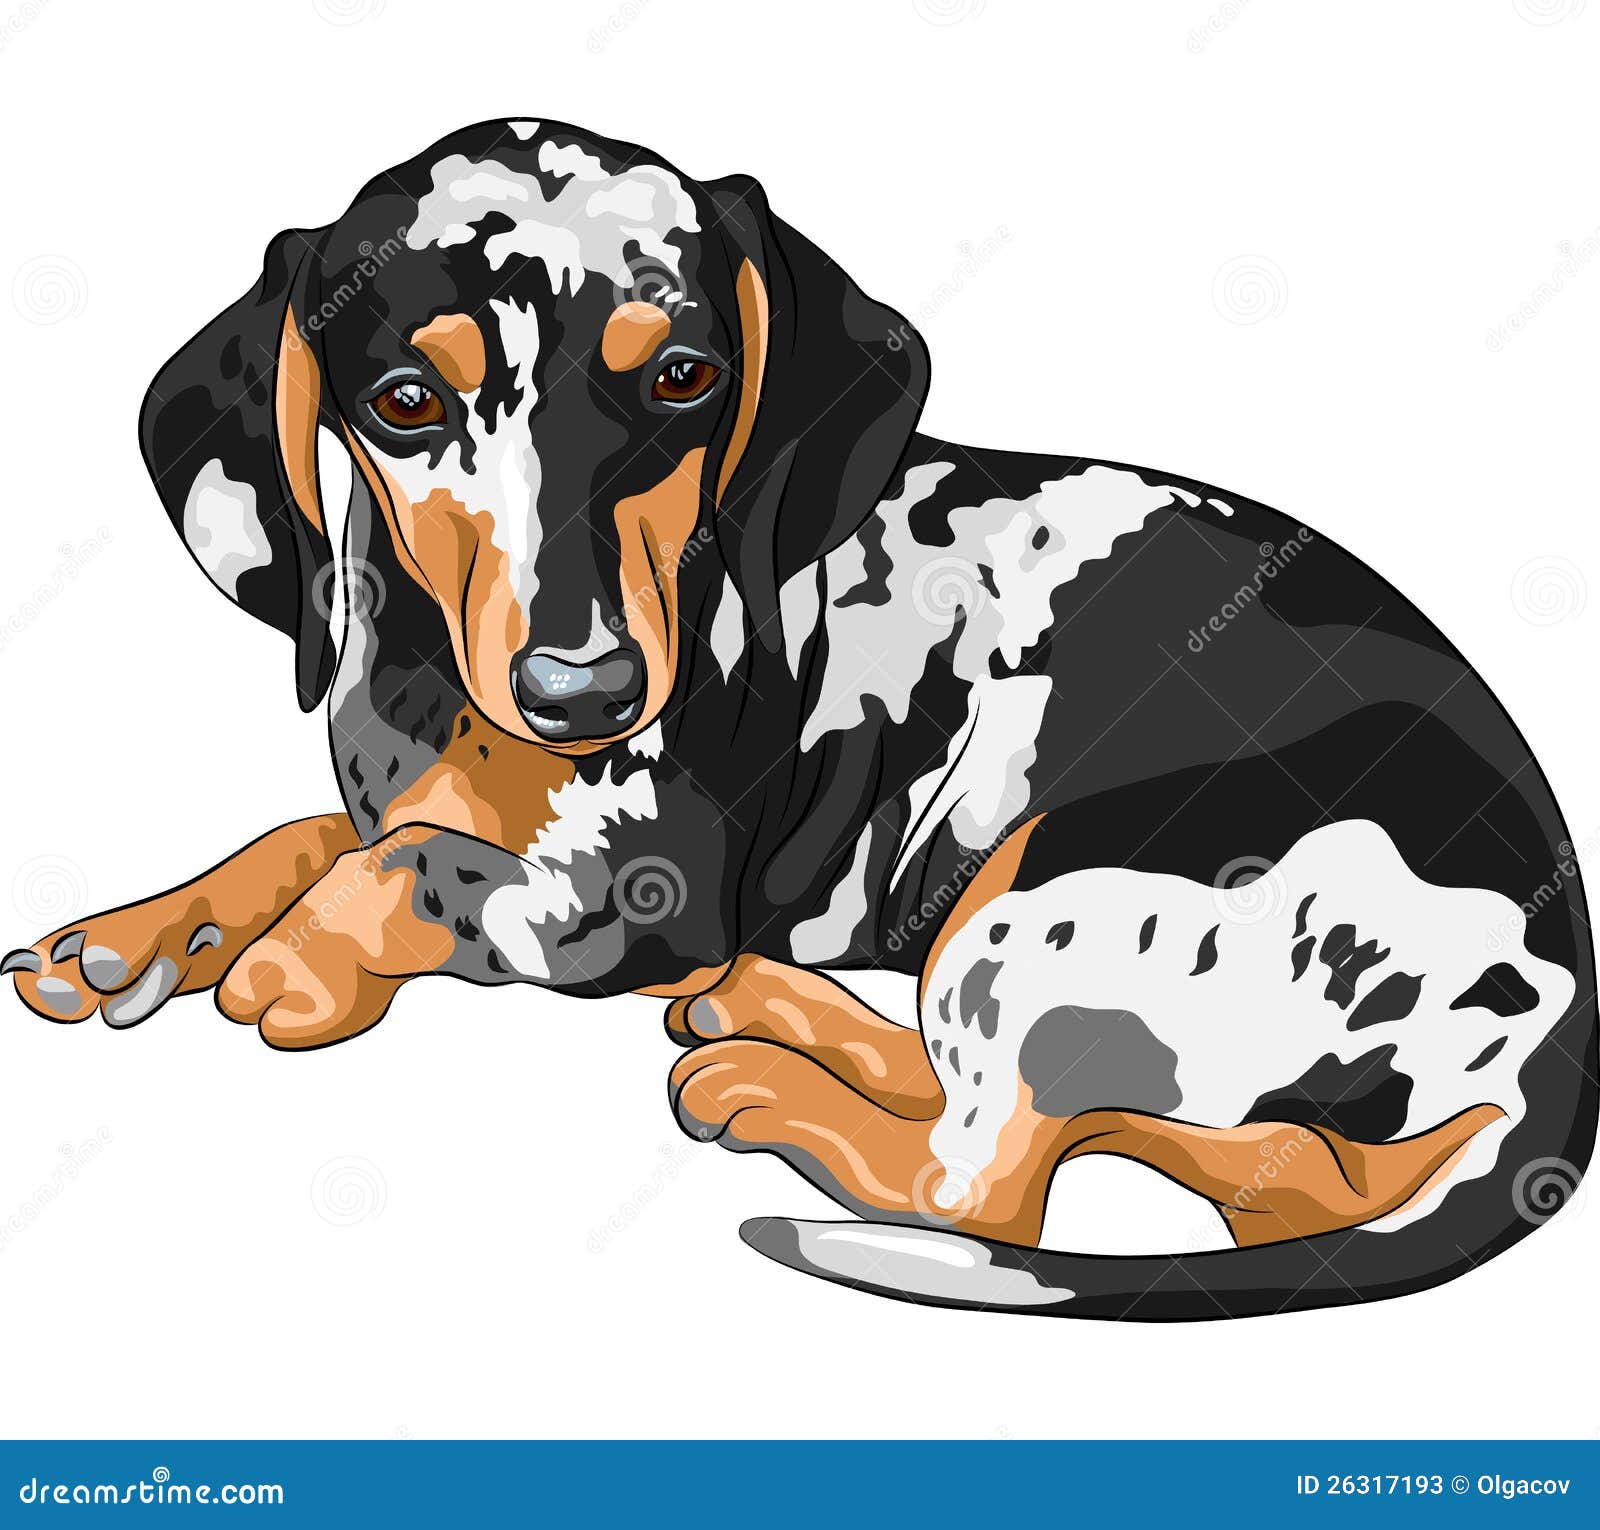  sketch dog dachshund breed lying